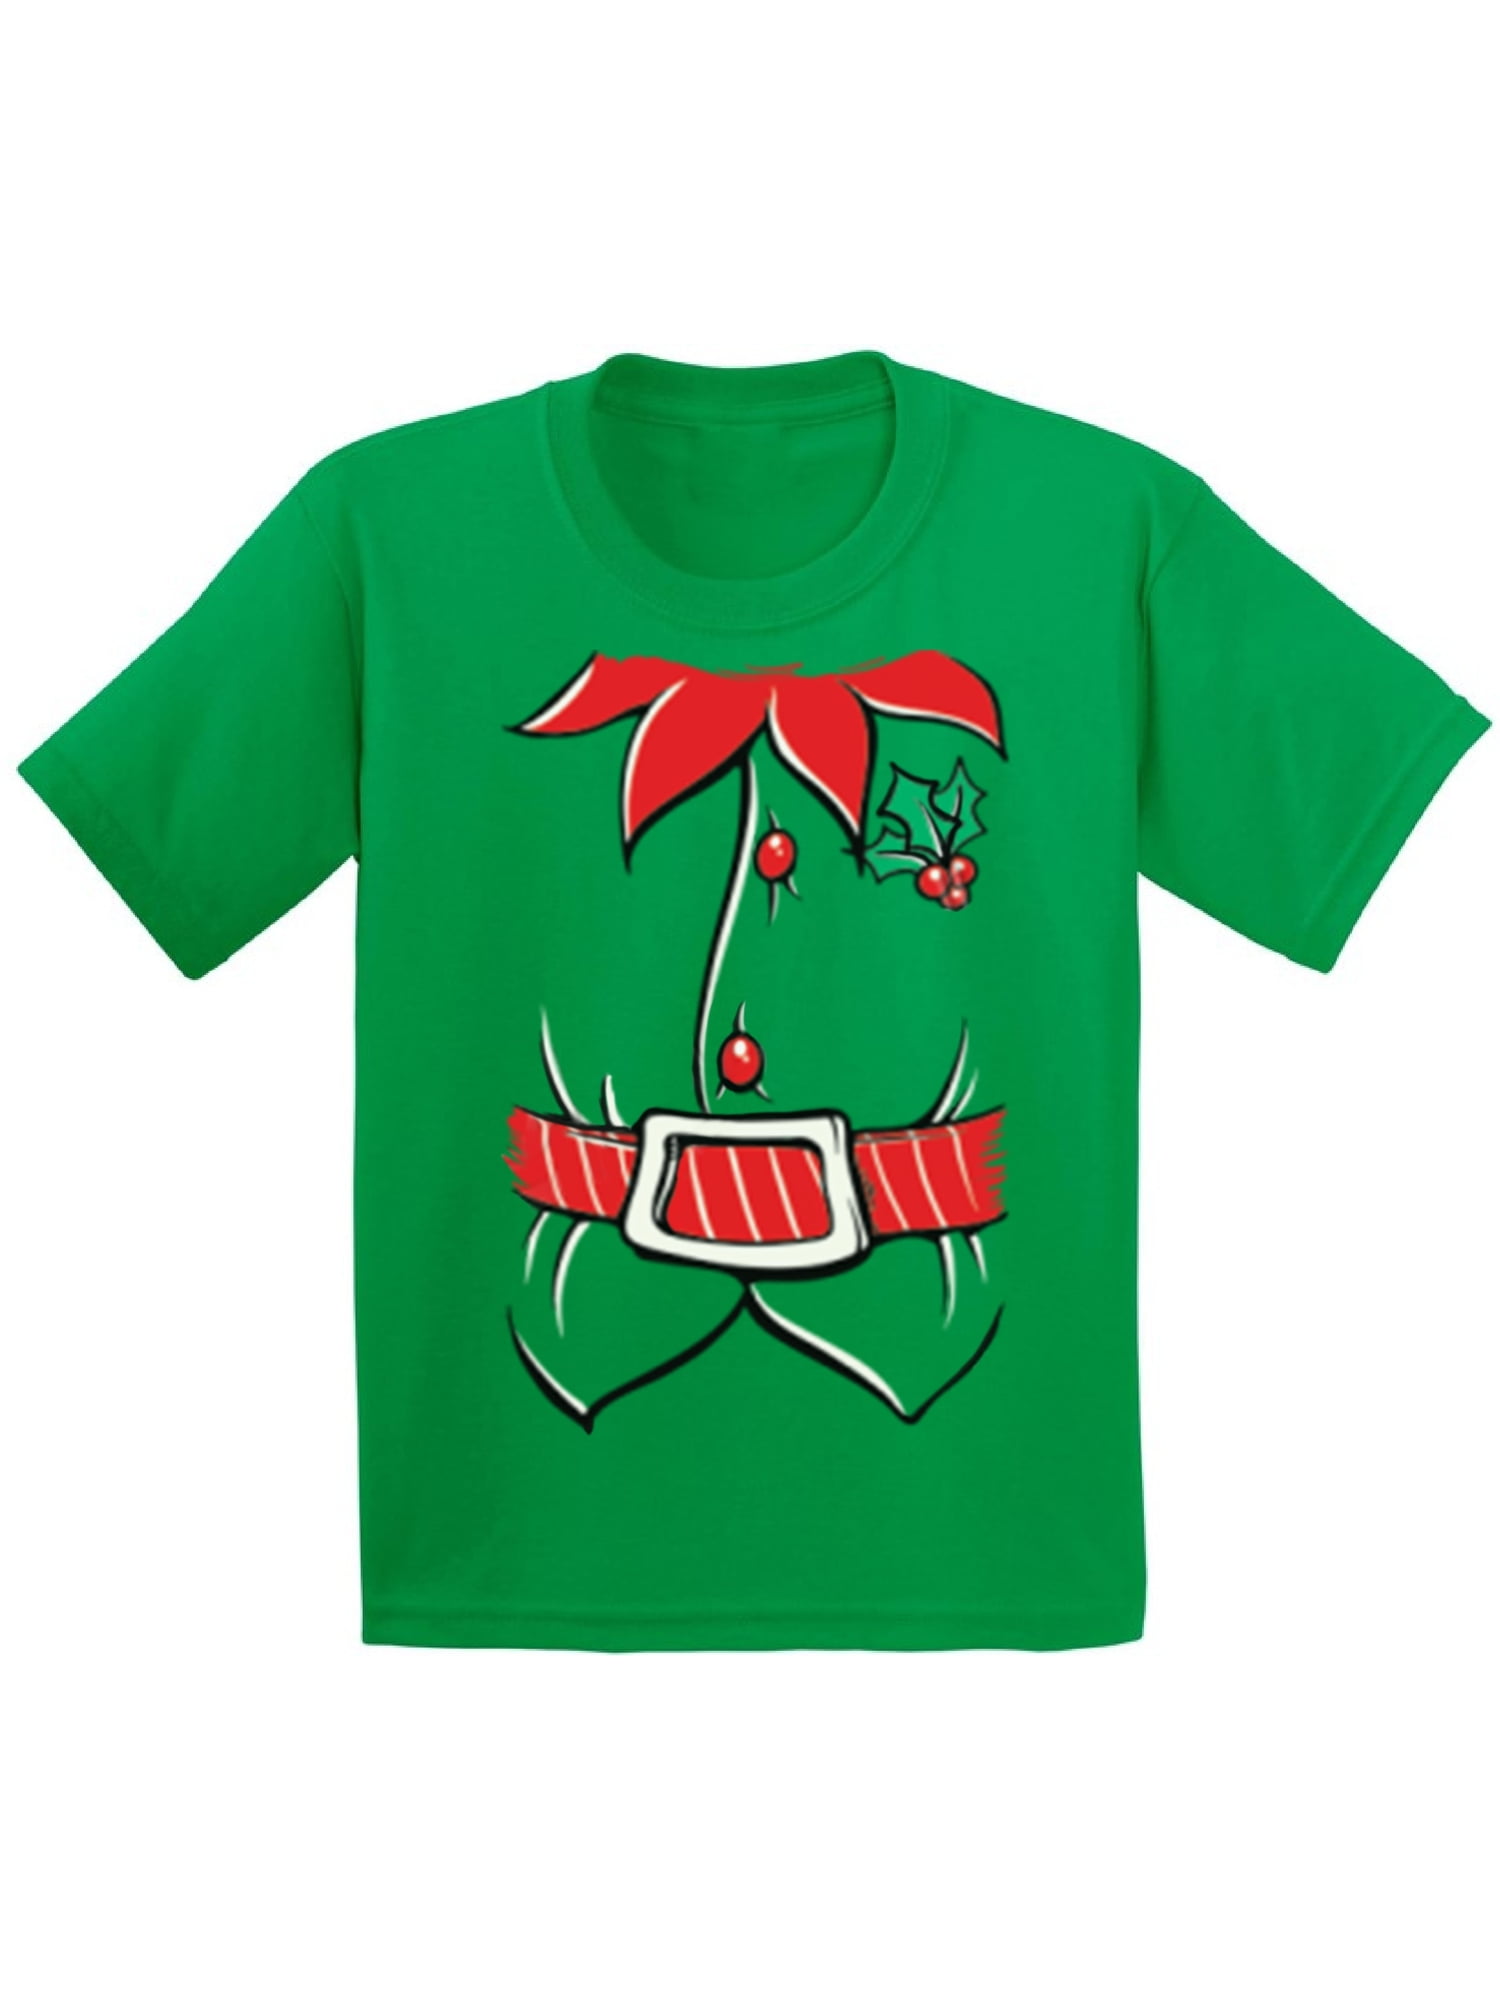 Sons Of Santa Mens T-Shirt Xmas Novelty Christmas Gift Present Tee Top T Shirt 